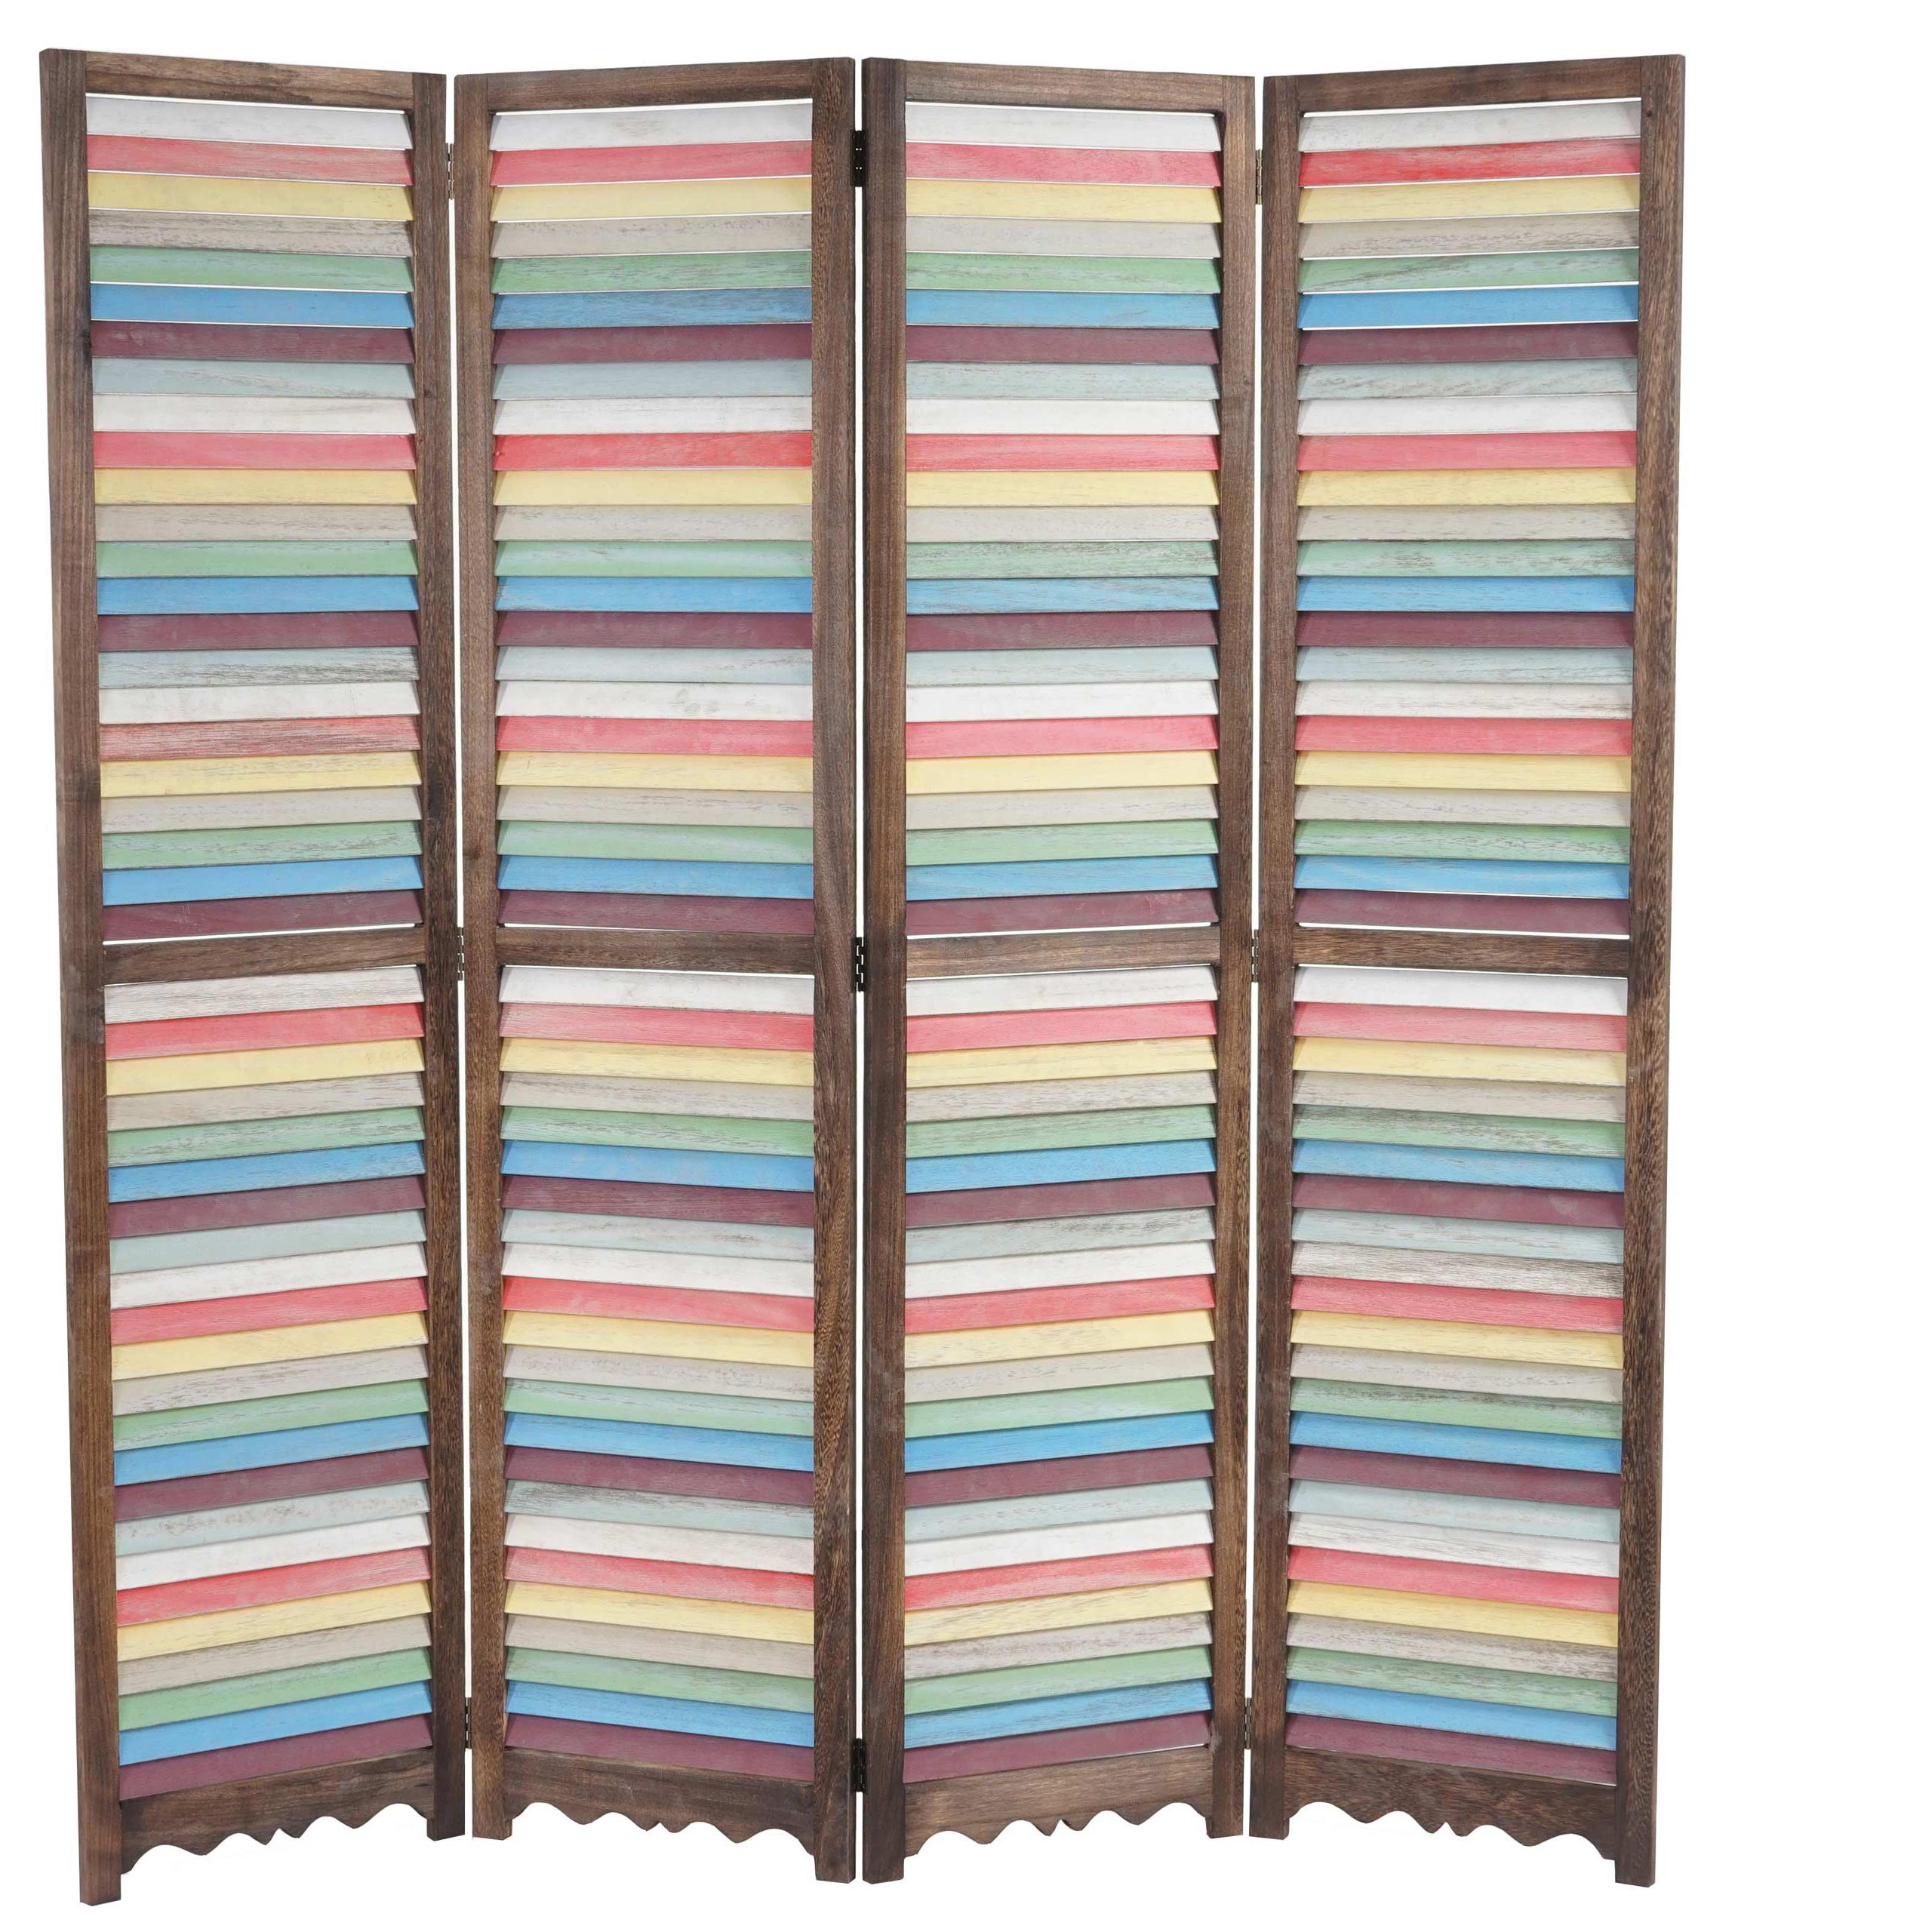 Biombo 4 paneles BLANDIN, Estructura de Madera en Marrón y Multicolor, 170x160x2cm